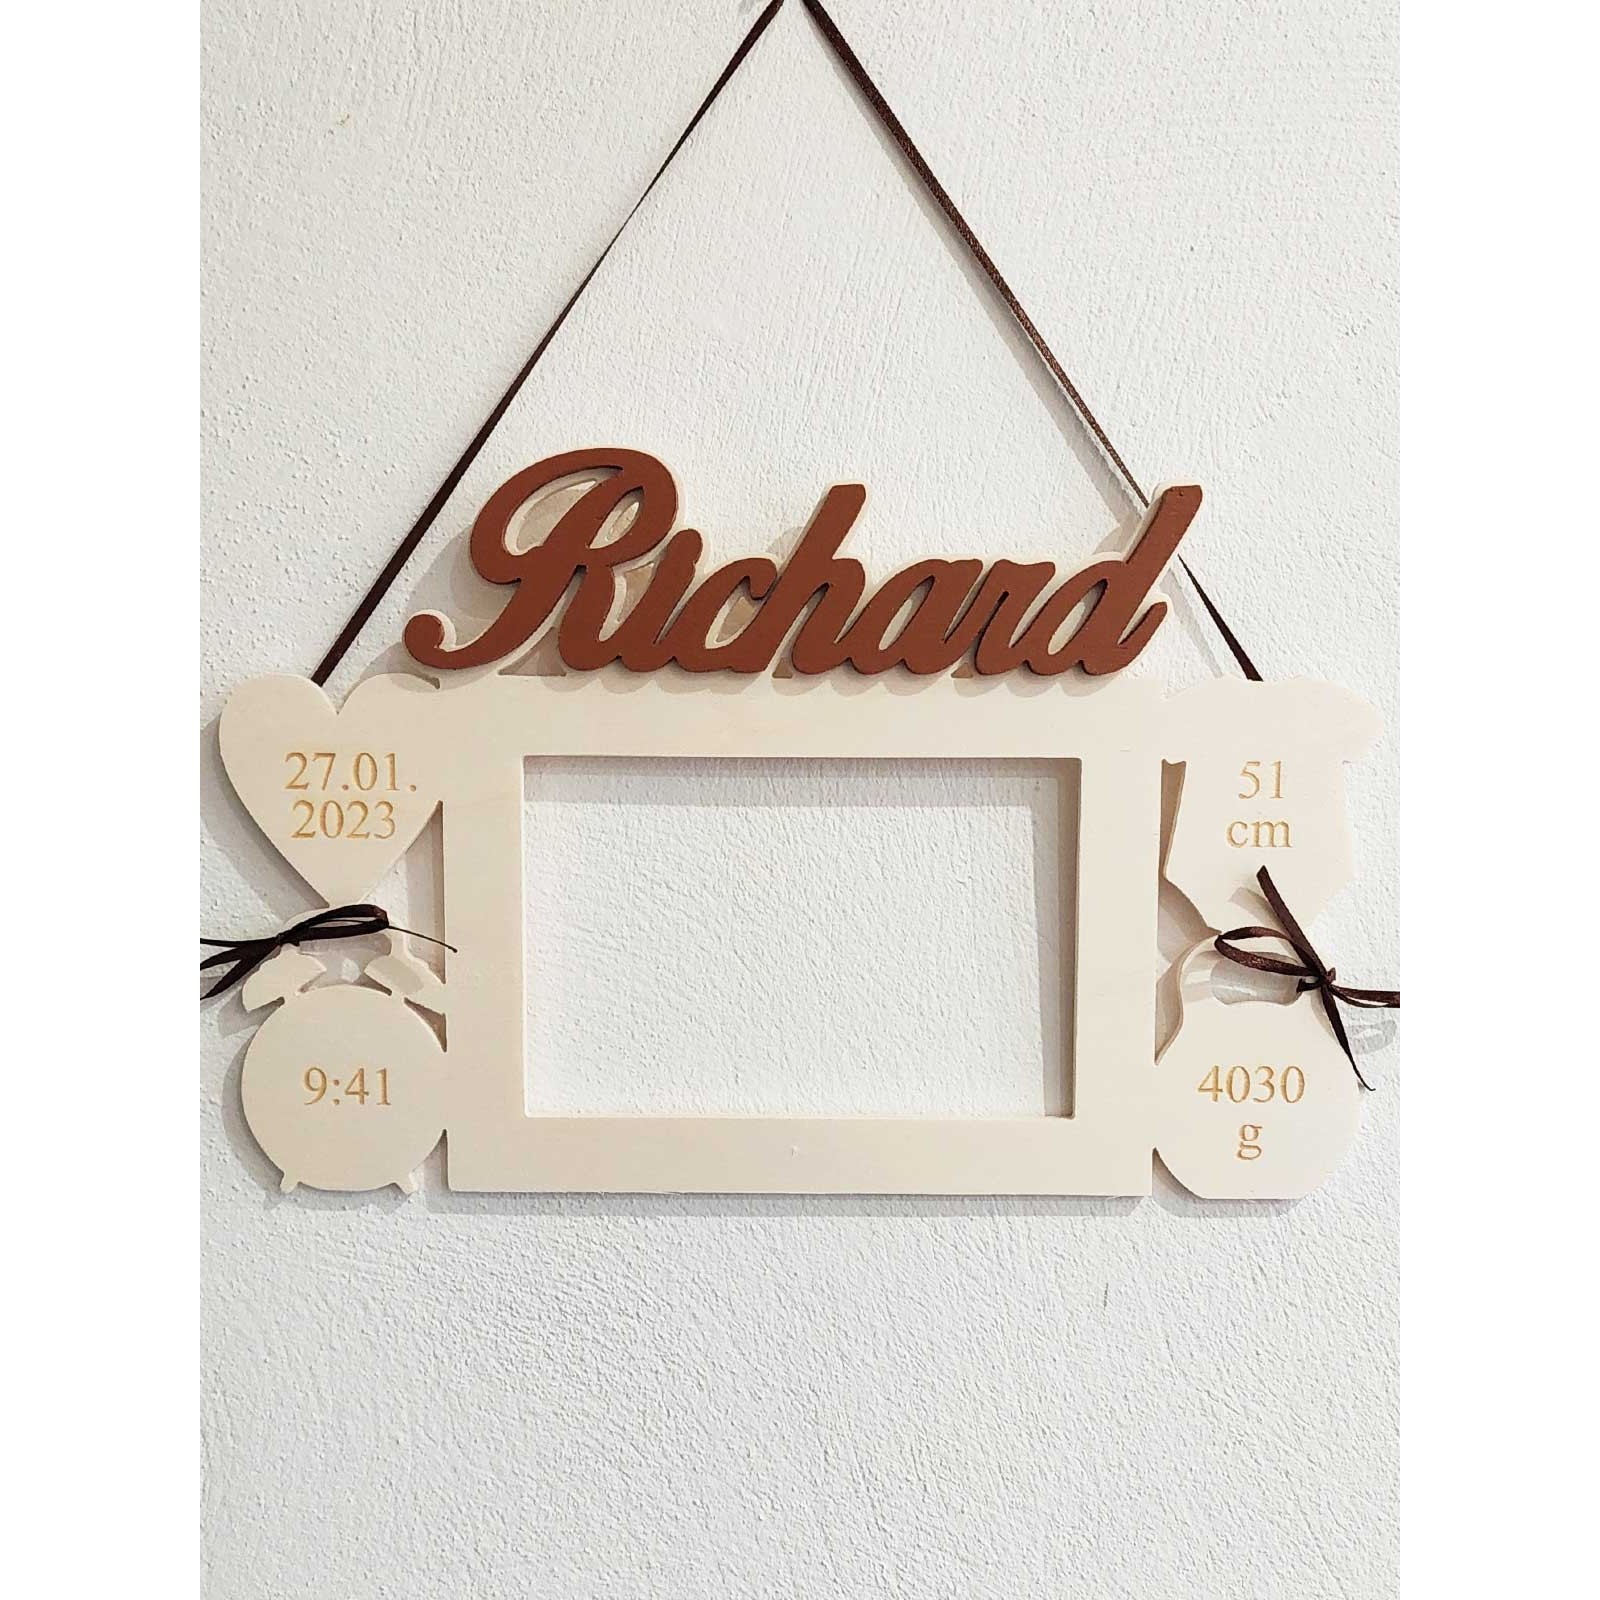 Fotorahmen aus Holz als Geschenk für die Enkelin Richard